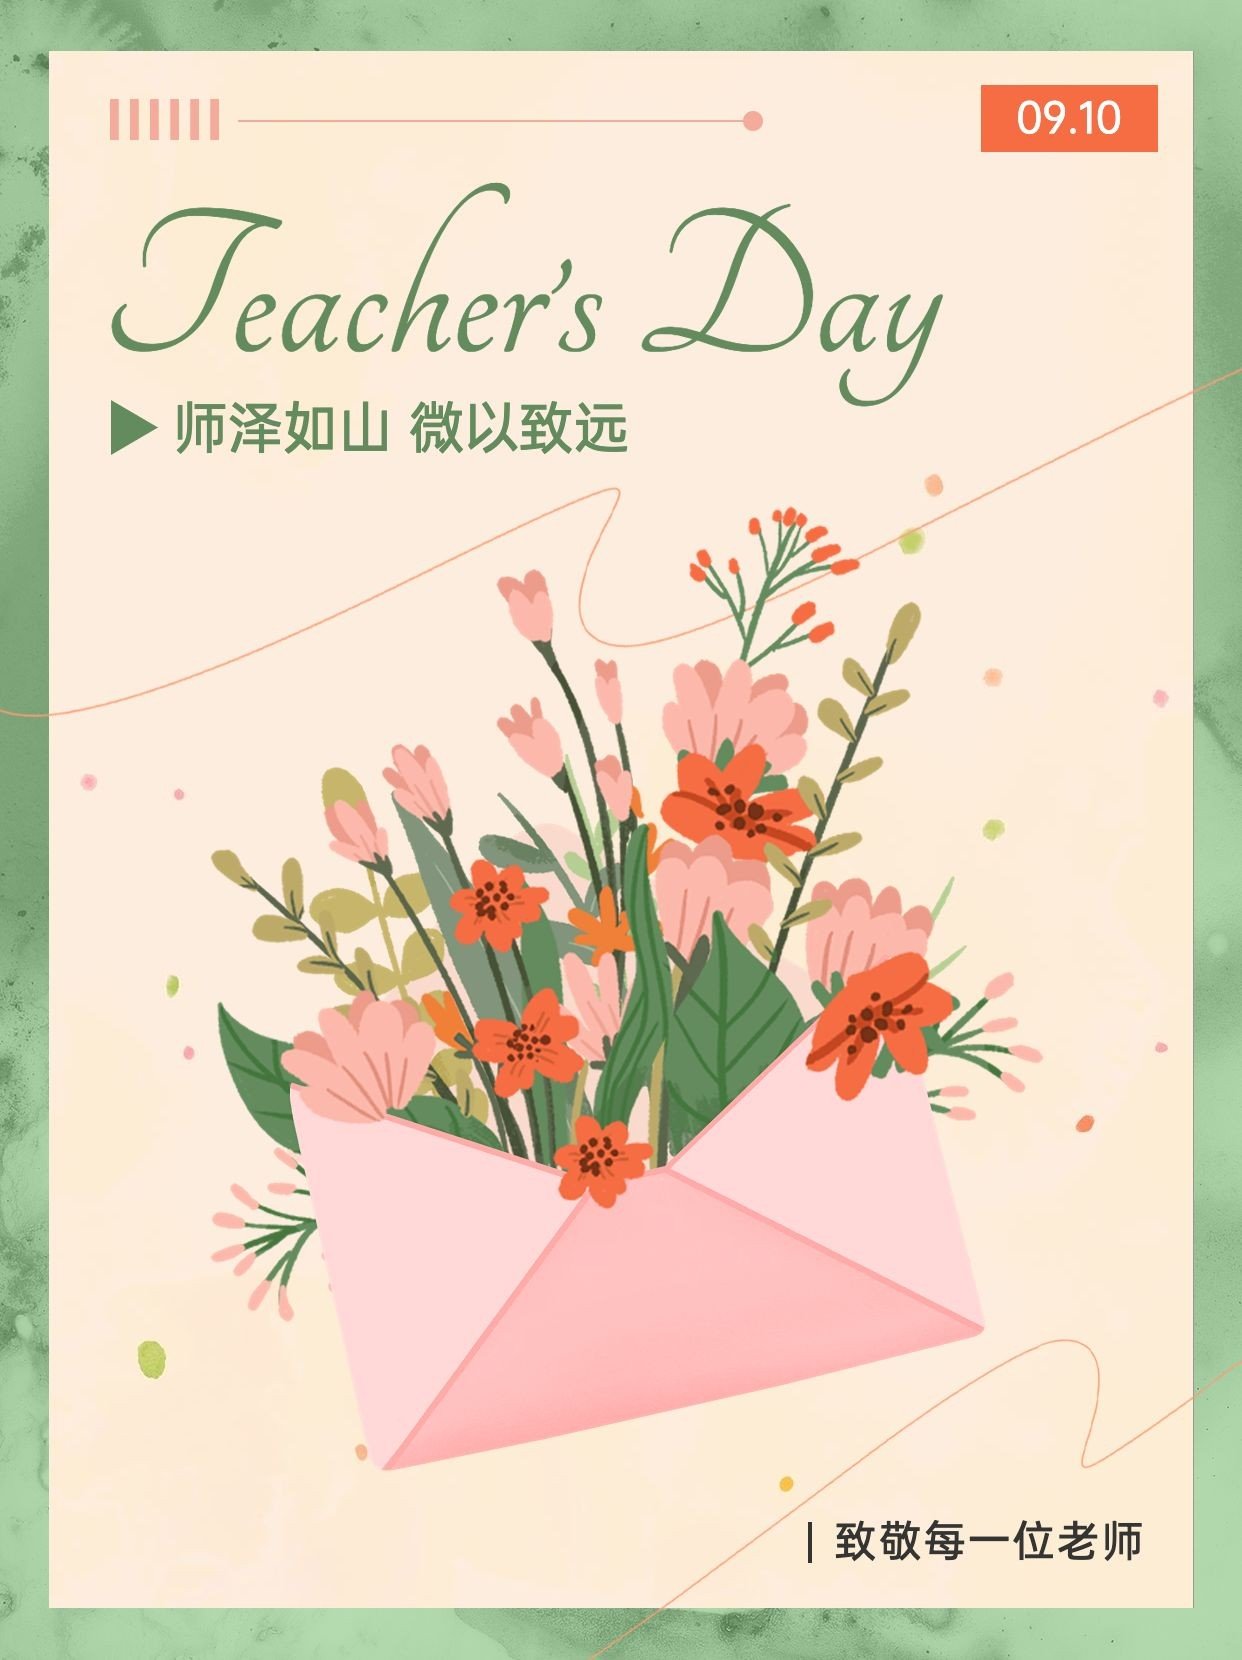 祝老师们教师节快乐！-格致在线学习平台